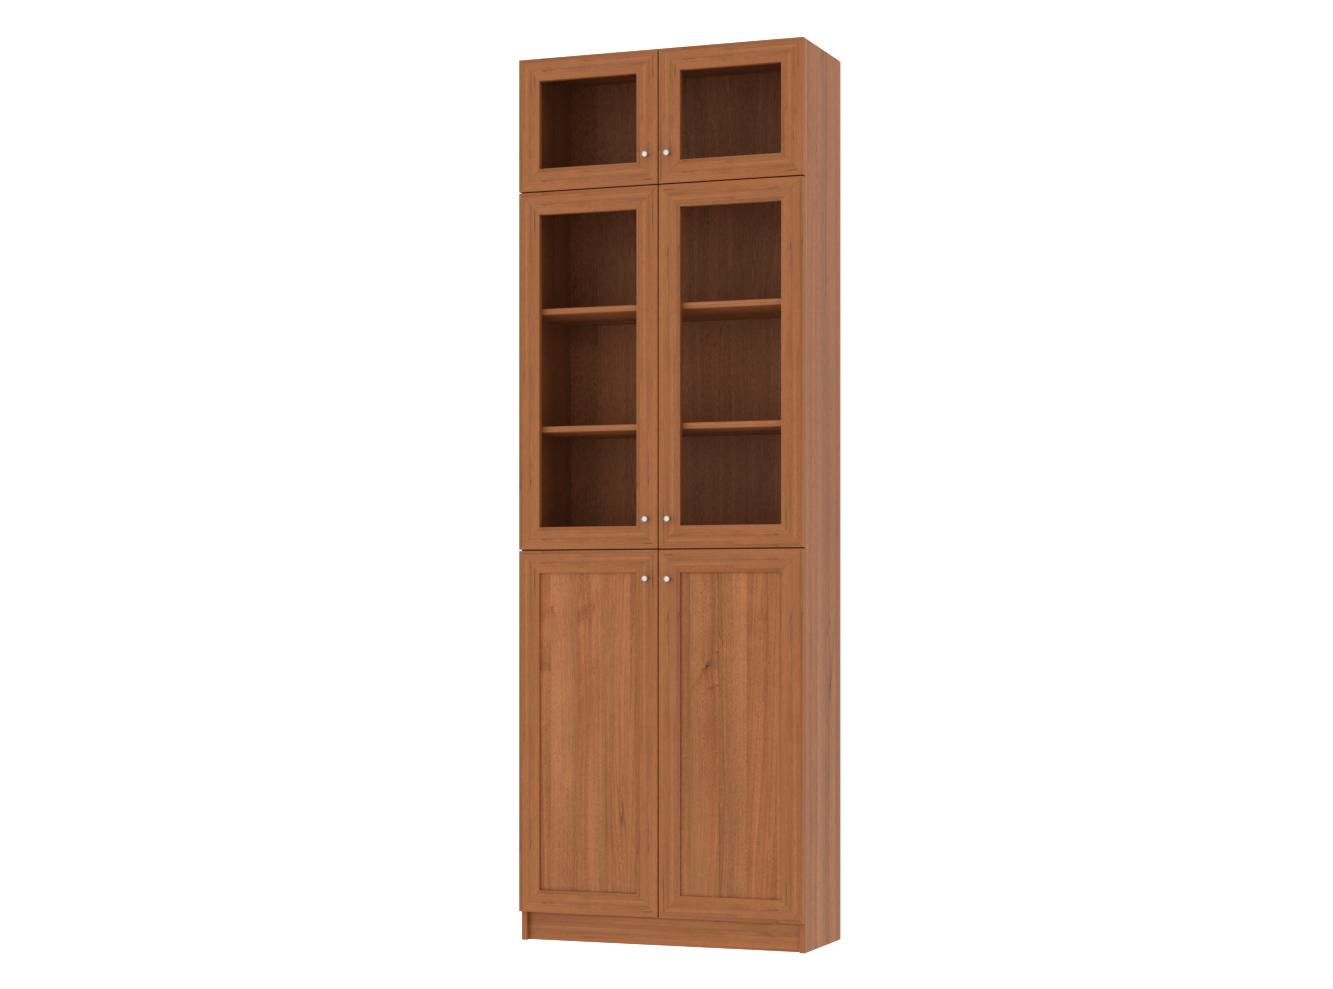 Изображение товара Книжный шкаф Билли 352 walnut guarneri ИКЕА (IKEA), 80x30x237 см на сайте adeta.ru